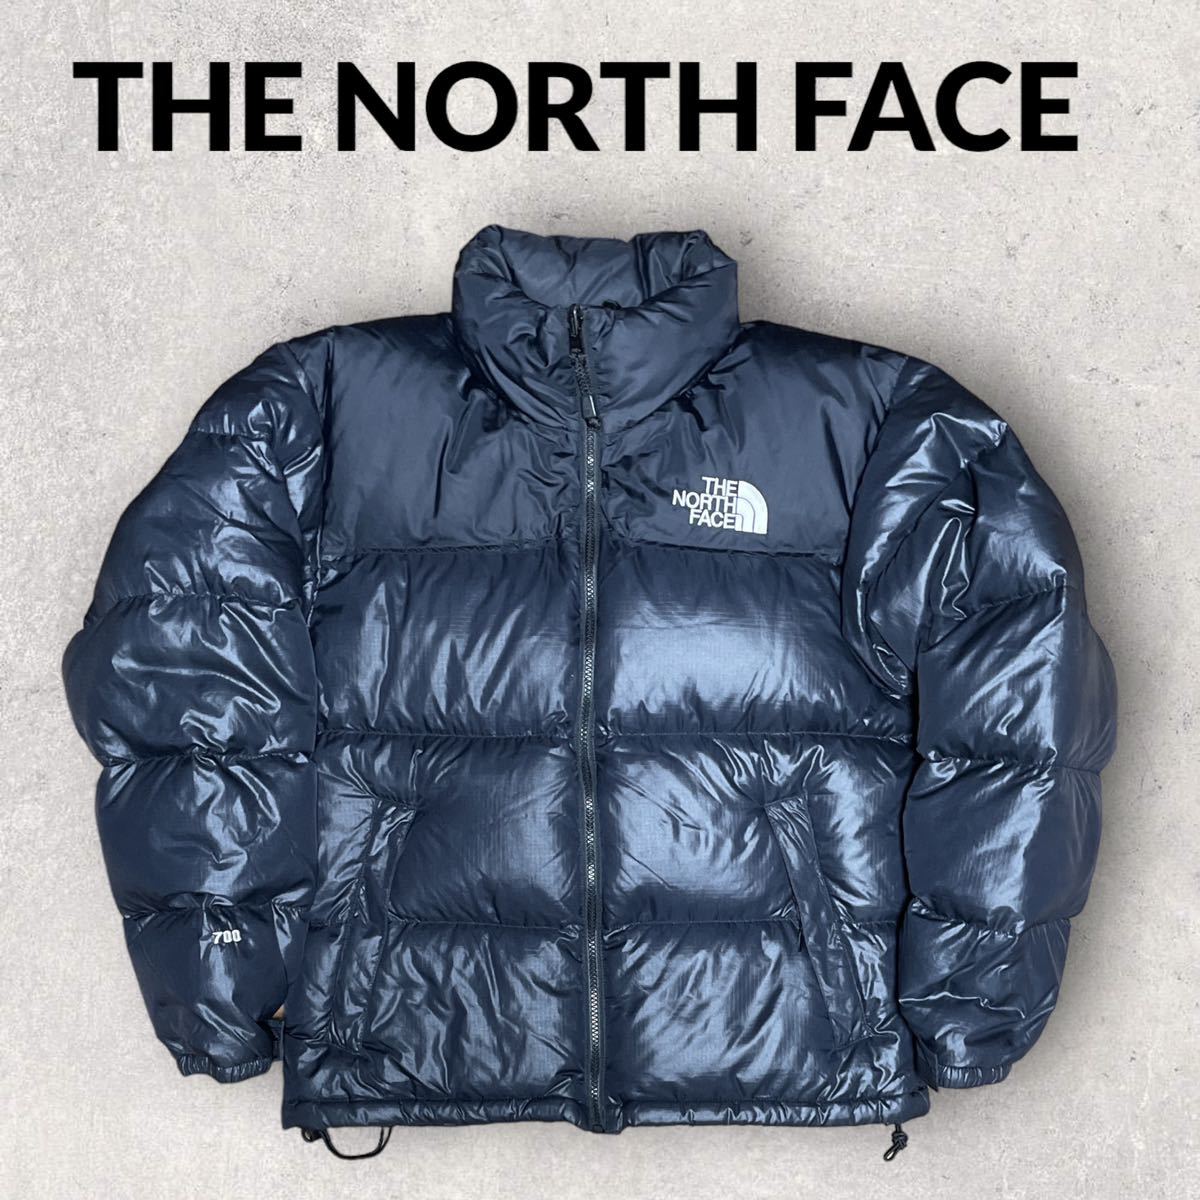 THE NORTH FACE ノースフェイス 90s ロゴ刺繍 ヌプシダウンジャケット 700フィル 黒 Sサイズ ブラック Nuptse